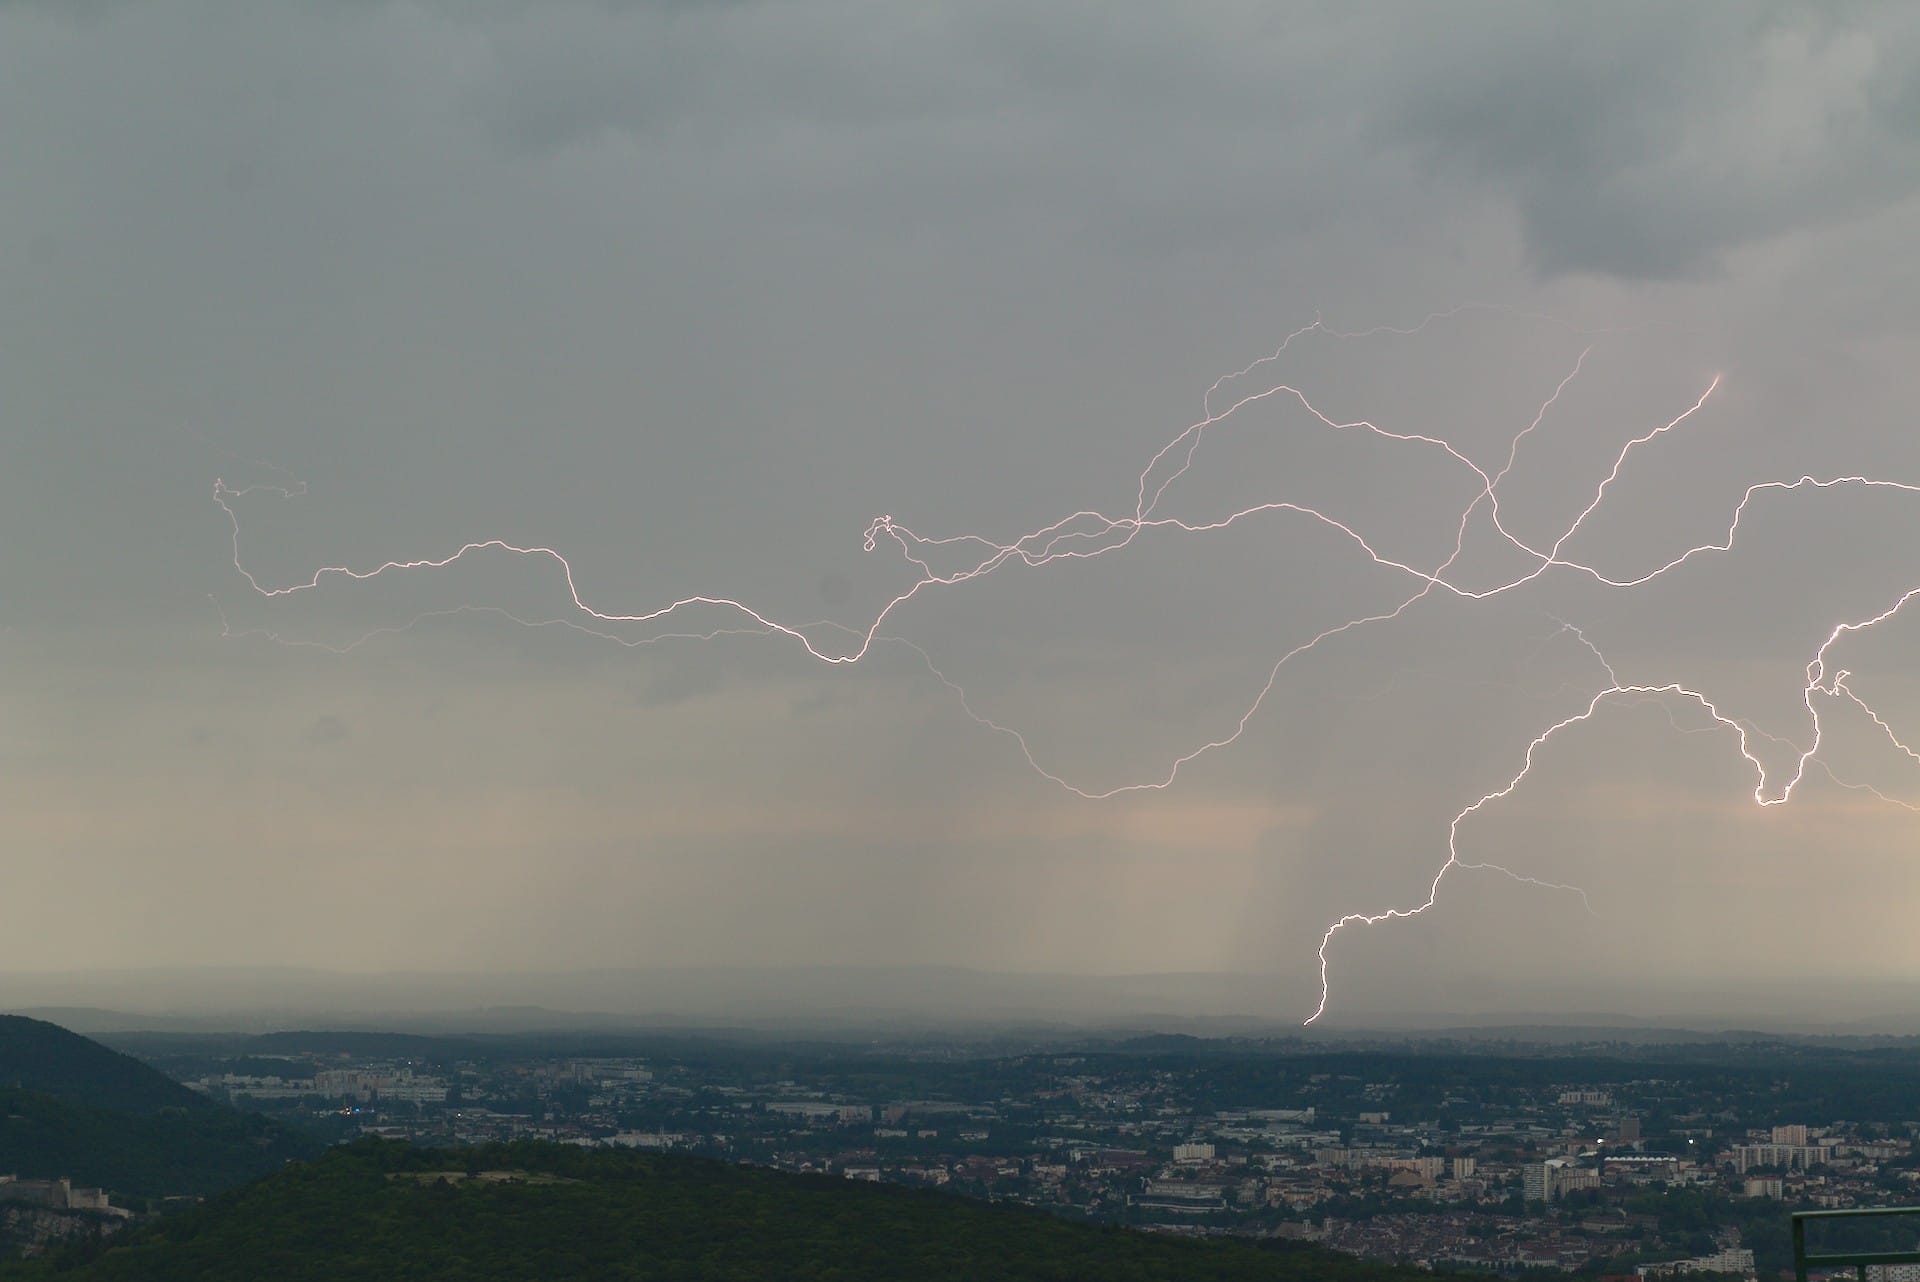 Foudre surprenant lors d'un orage sur Besançon, vu depuis Montfaucon. - 12/05/2018 19:15 - Clement Eustache